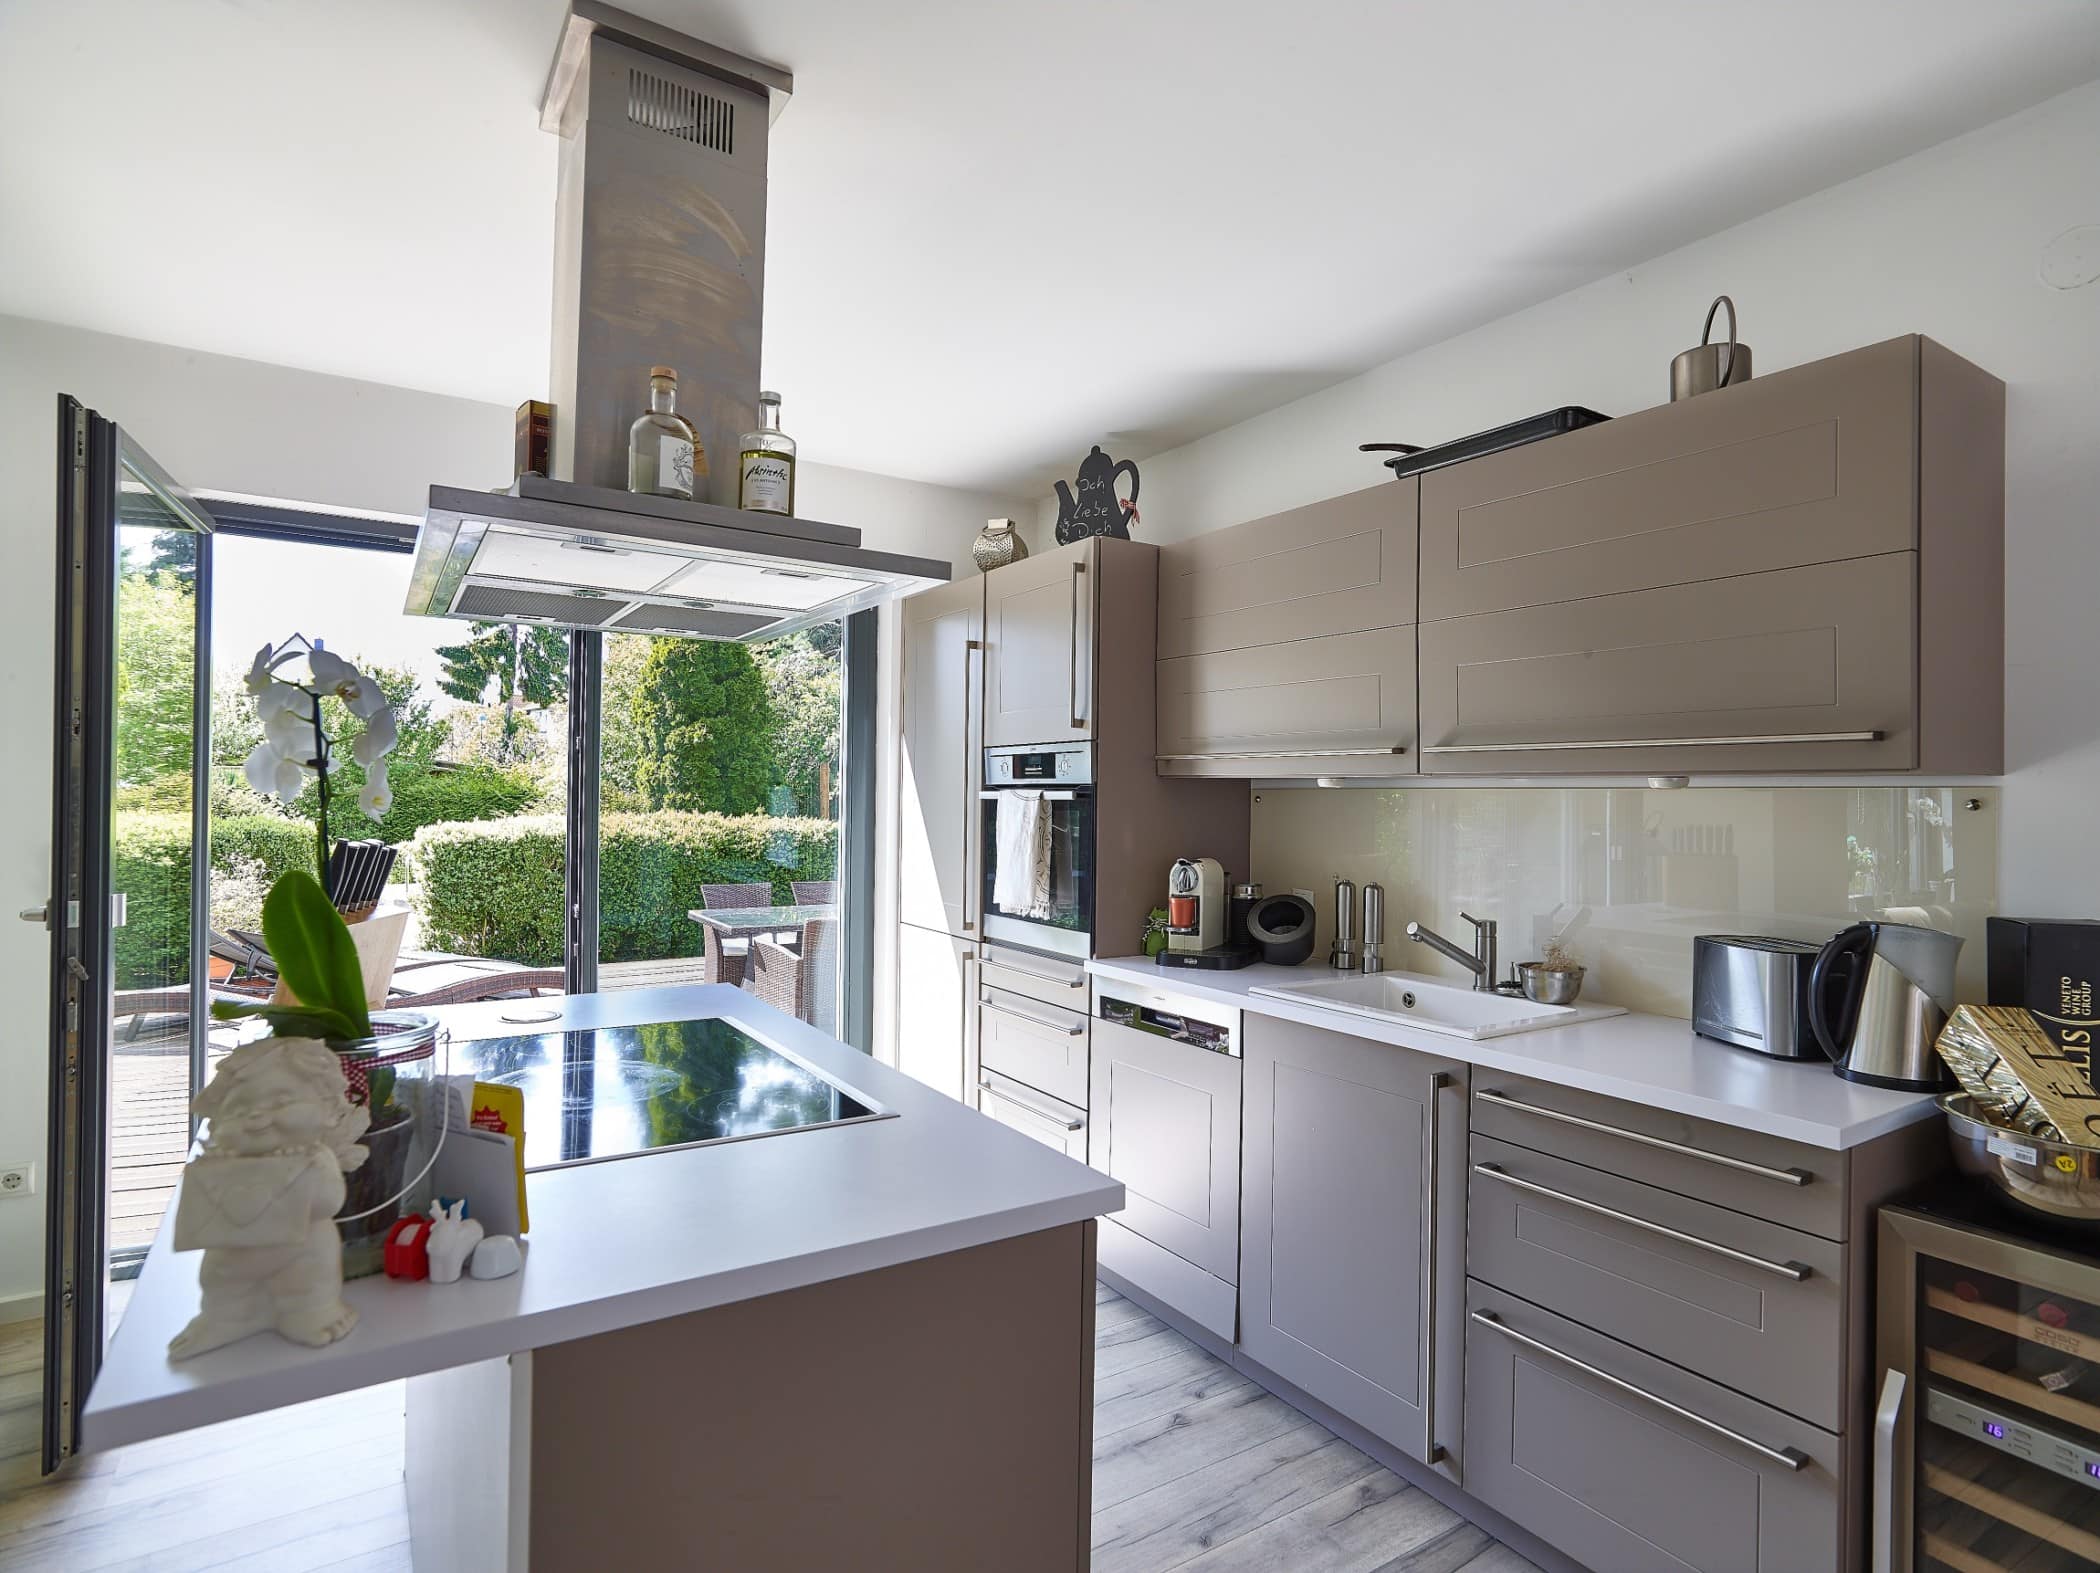 Küche mit Kochinsel modern grau - Inneneinrichtung Fertighaus Verona von GUSSEK Haus - HausbauDirekt.de